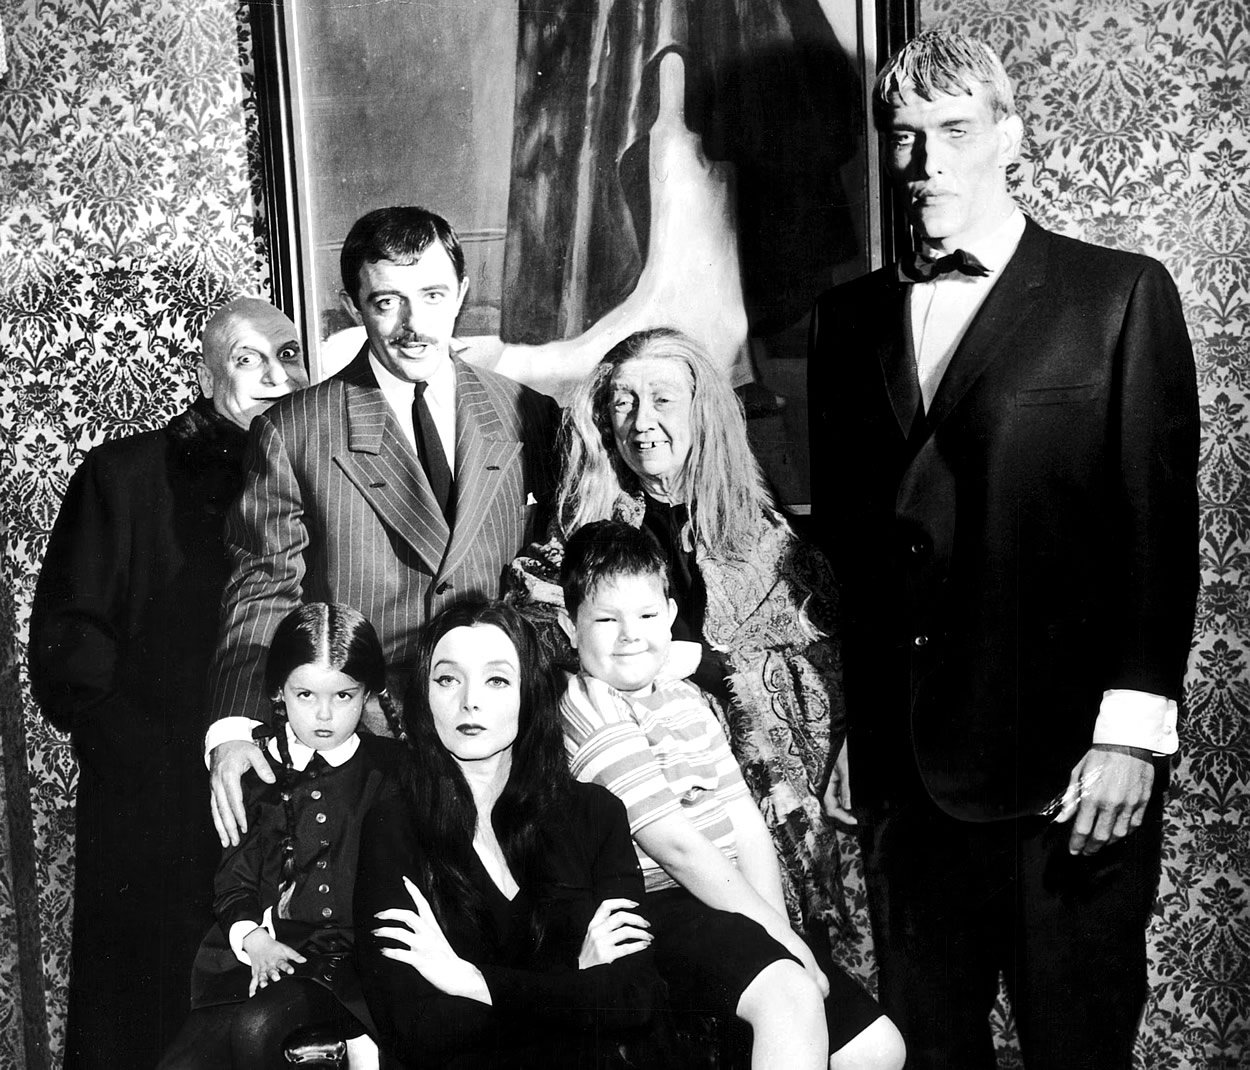 A Família Addams, série de televisão clássica dos anos 60, baseada nos personagens criados por Charles Addams